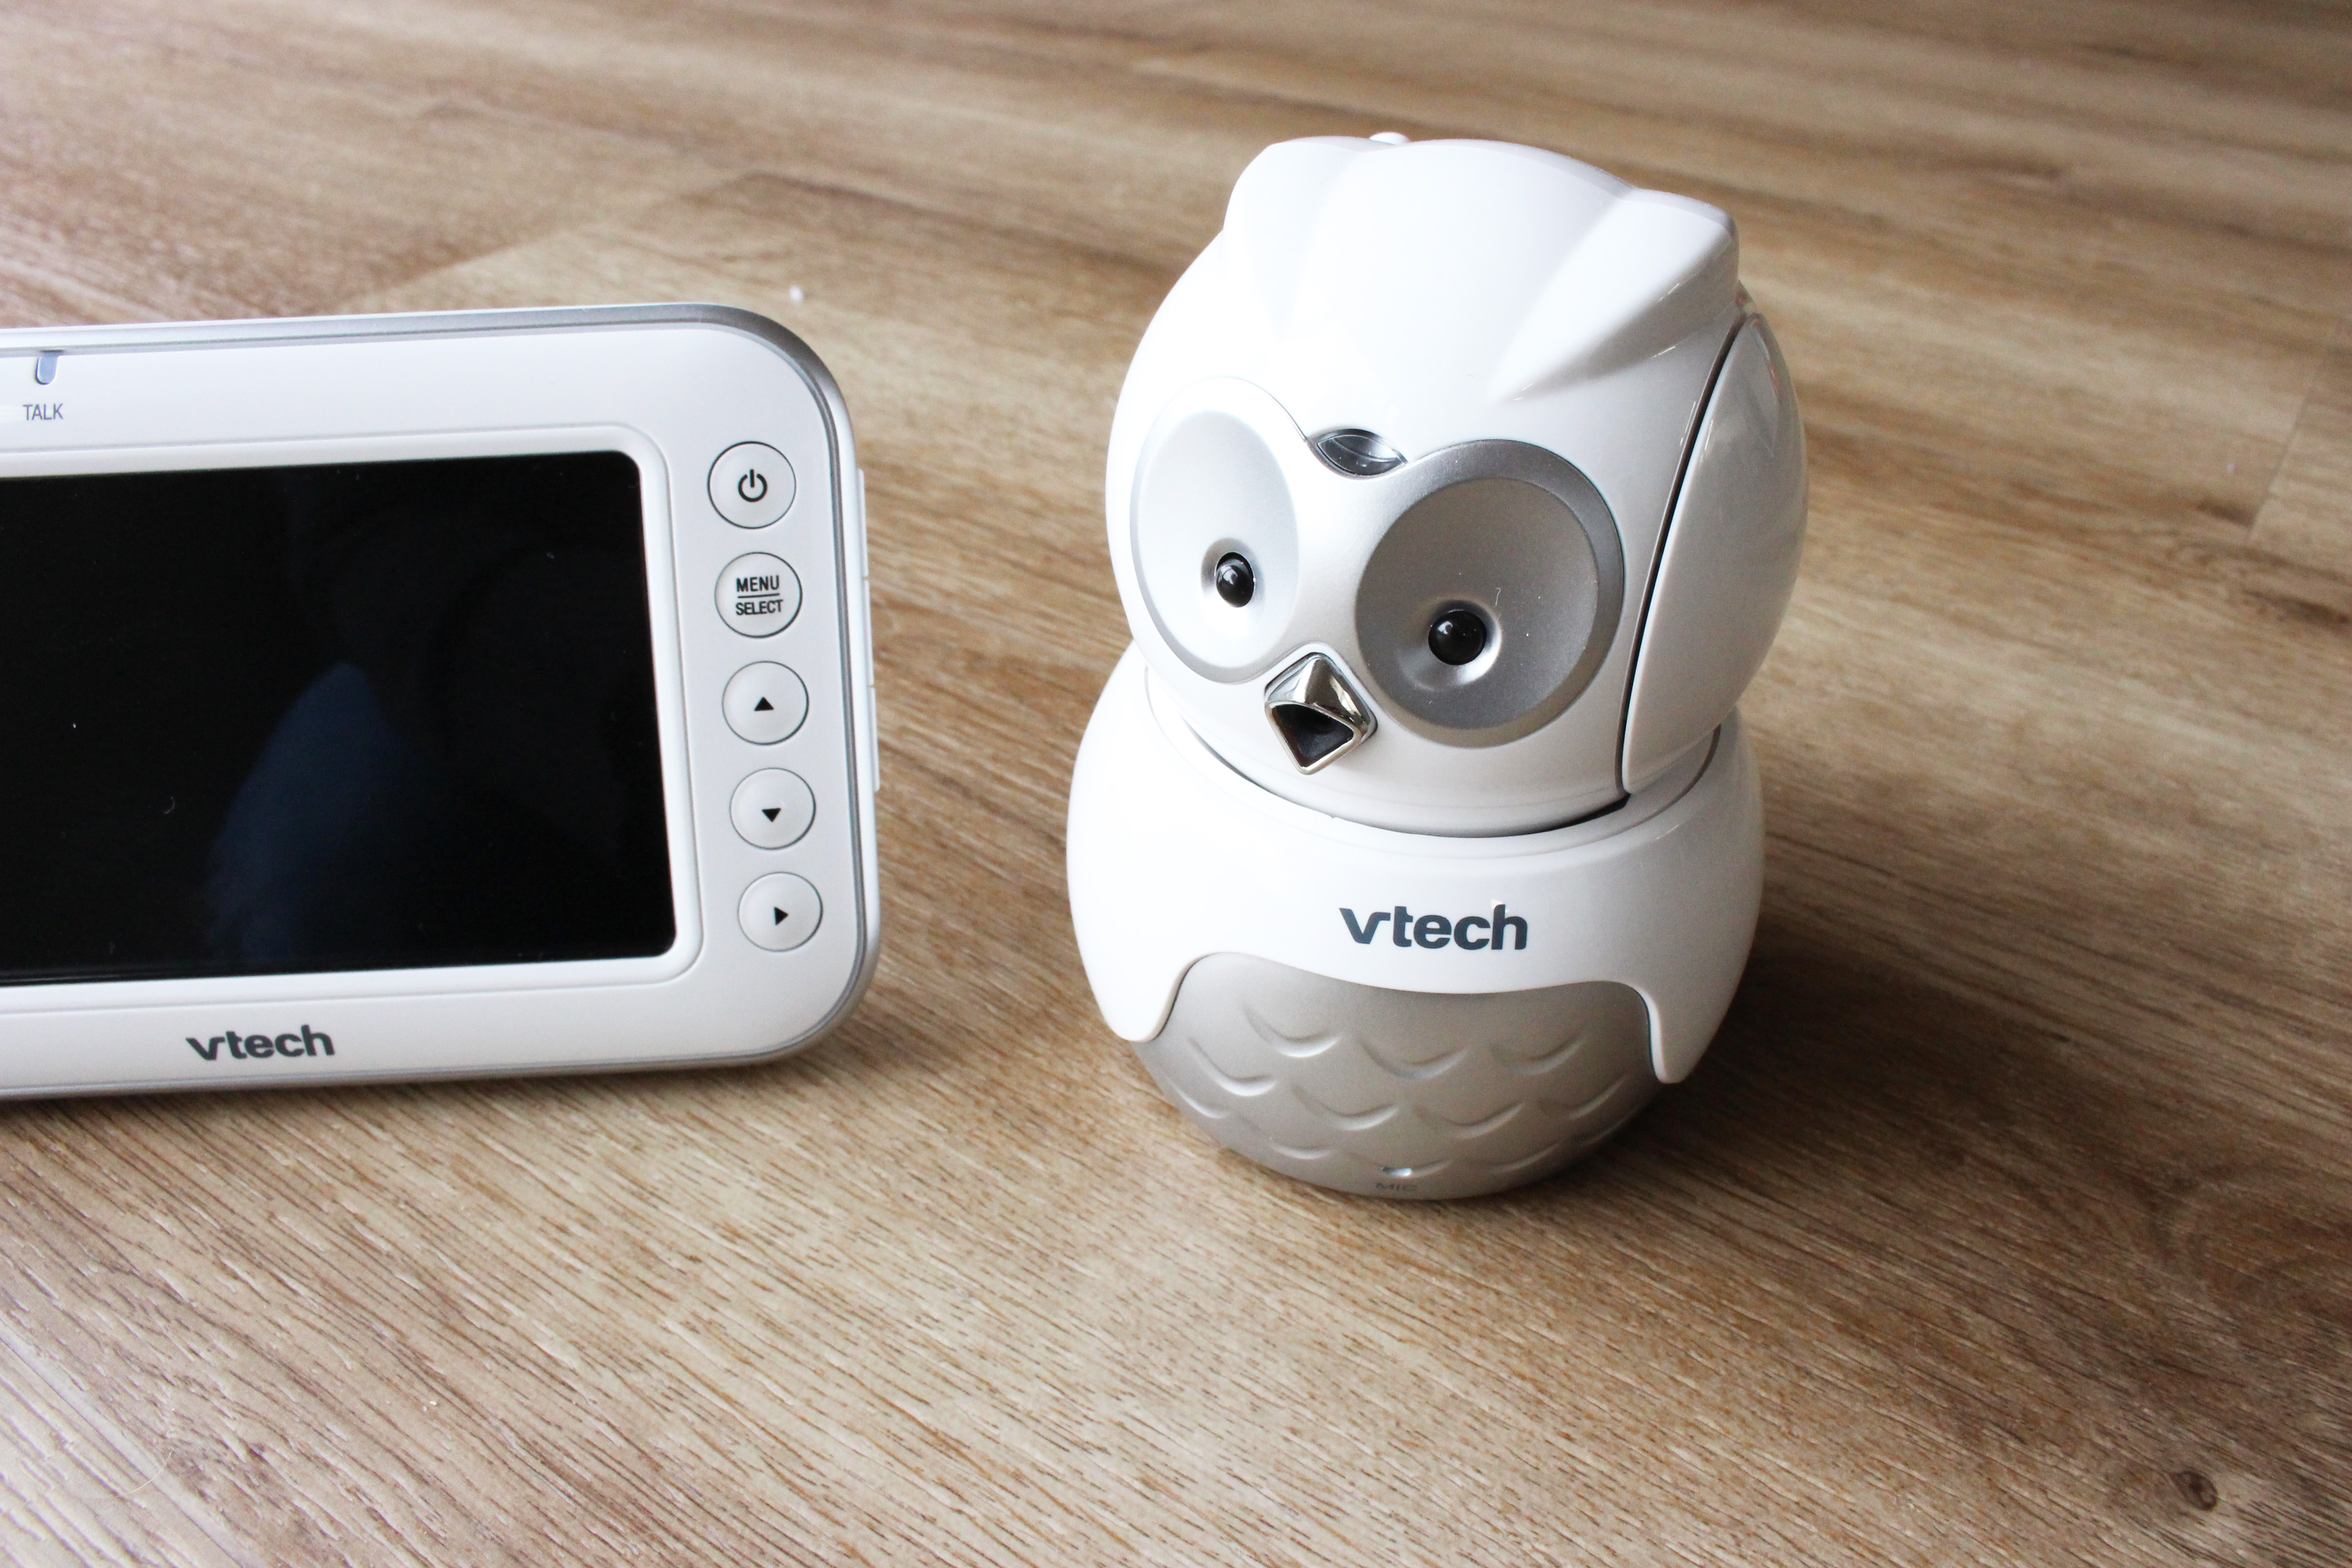 vtech extra camera for bm4500 owl